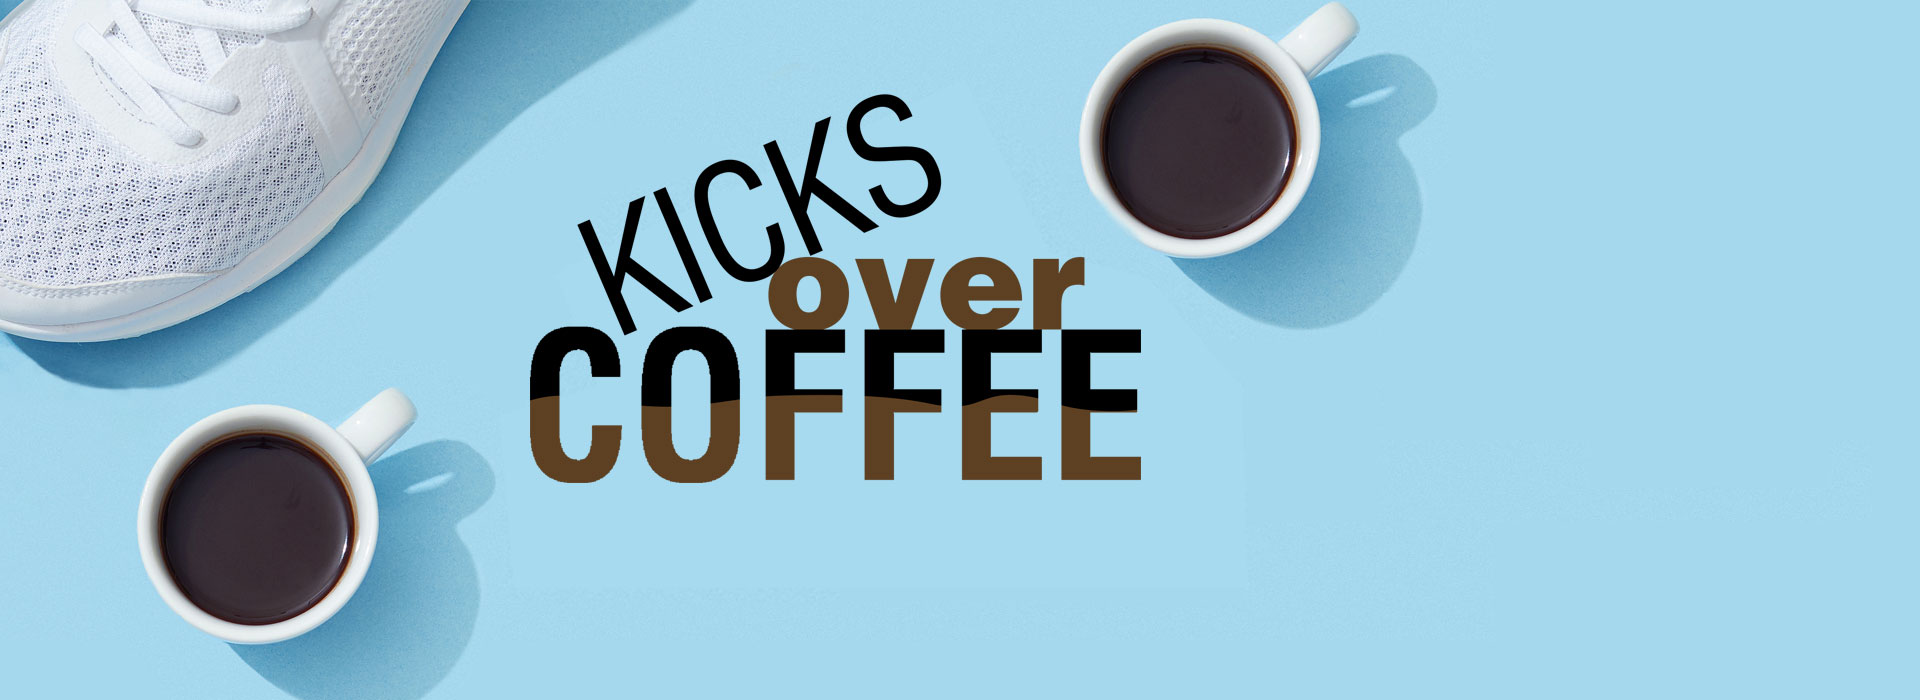 Kicks over Coffee